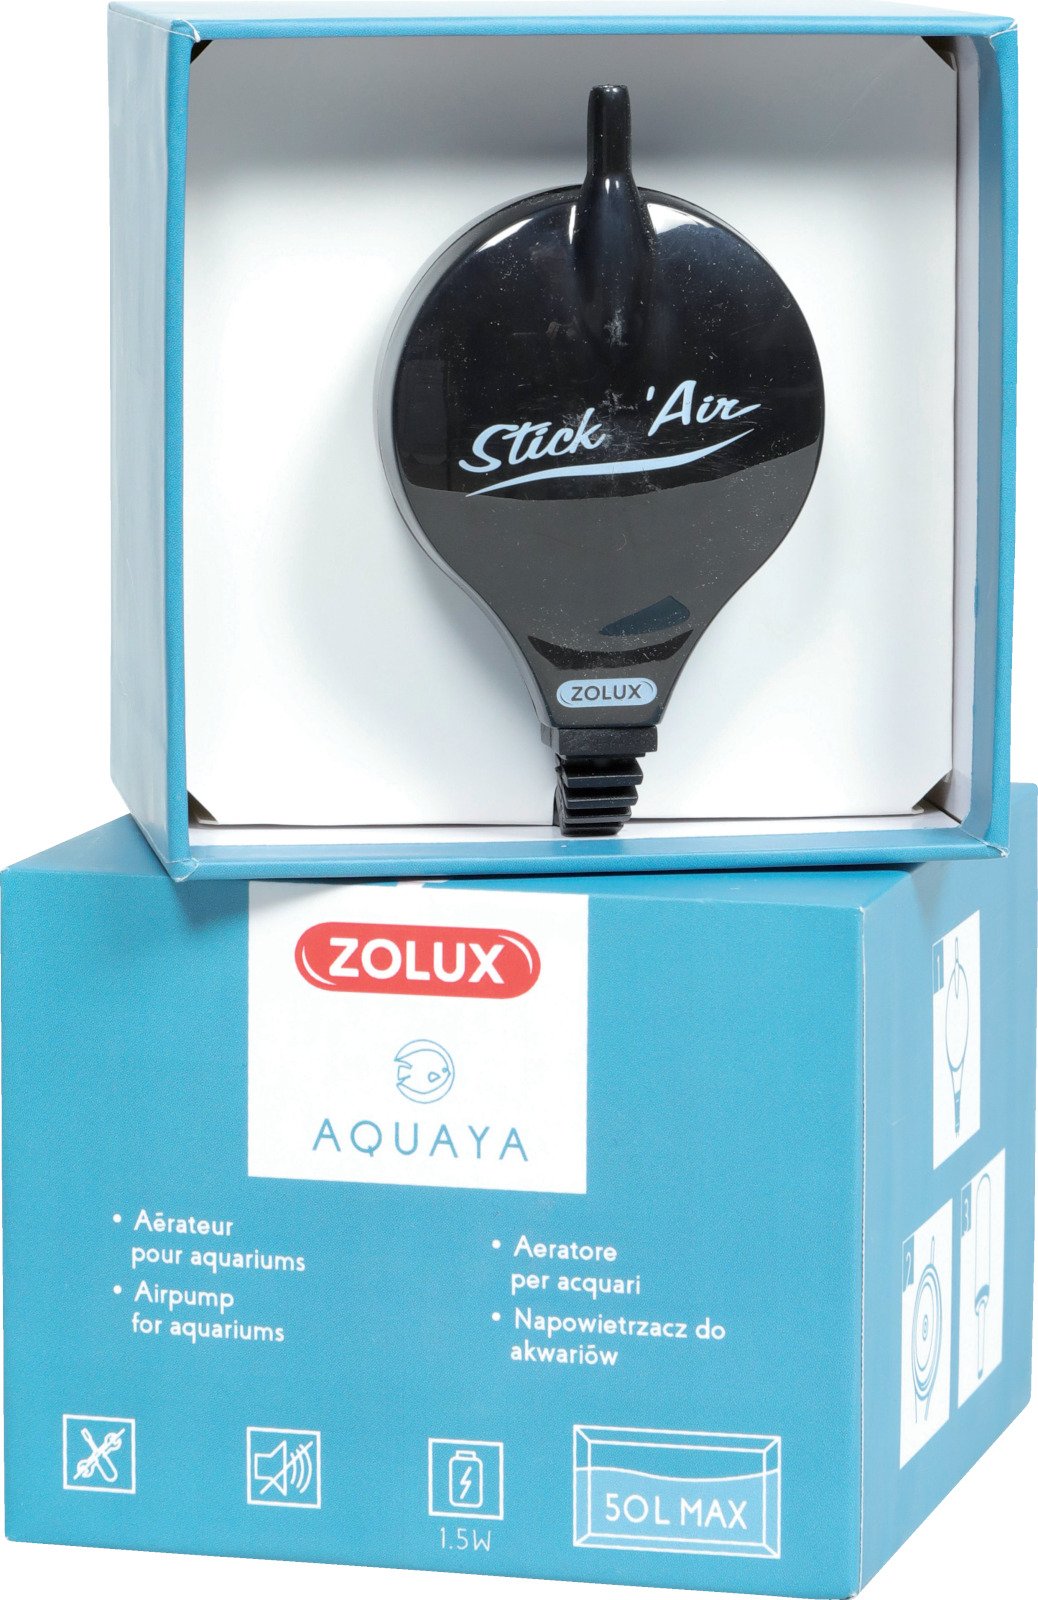 Kit pompe à air Stick'air Aquaya - plusieurs coloris disponibles